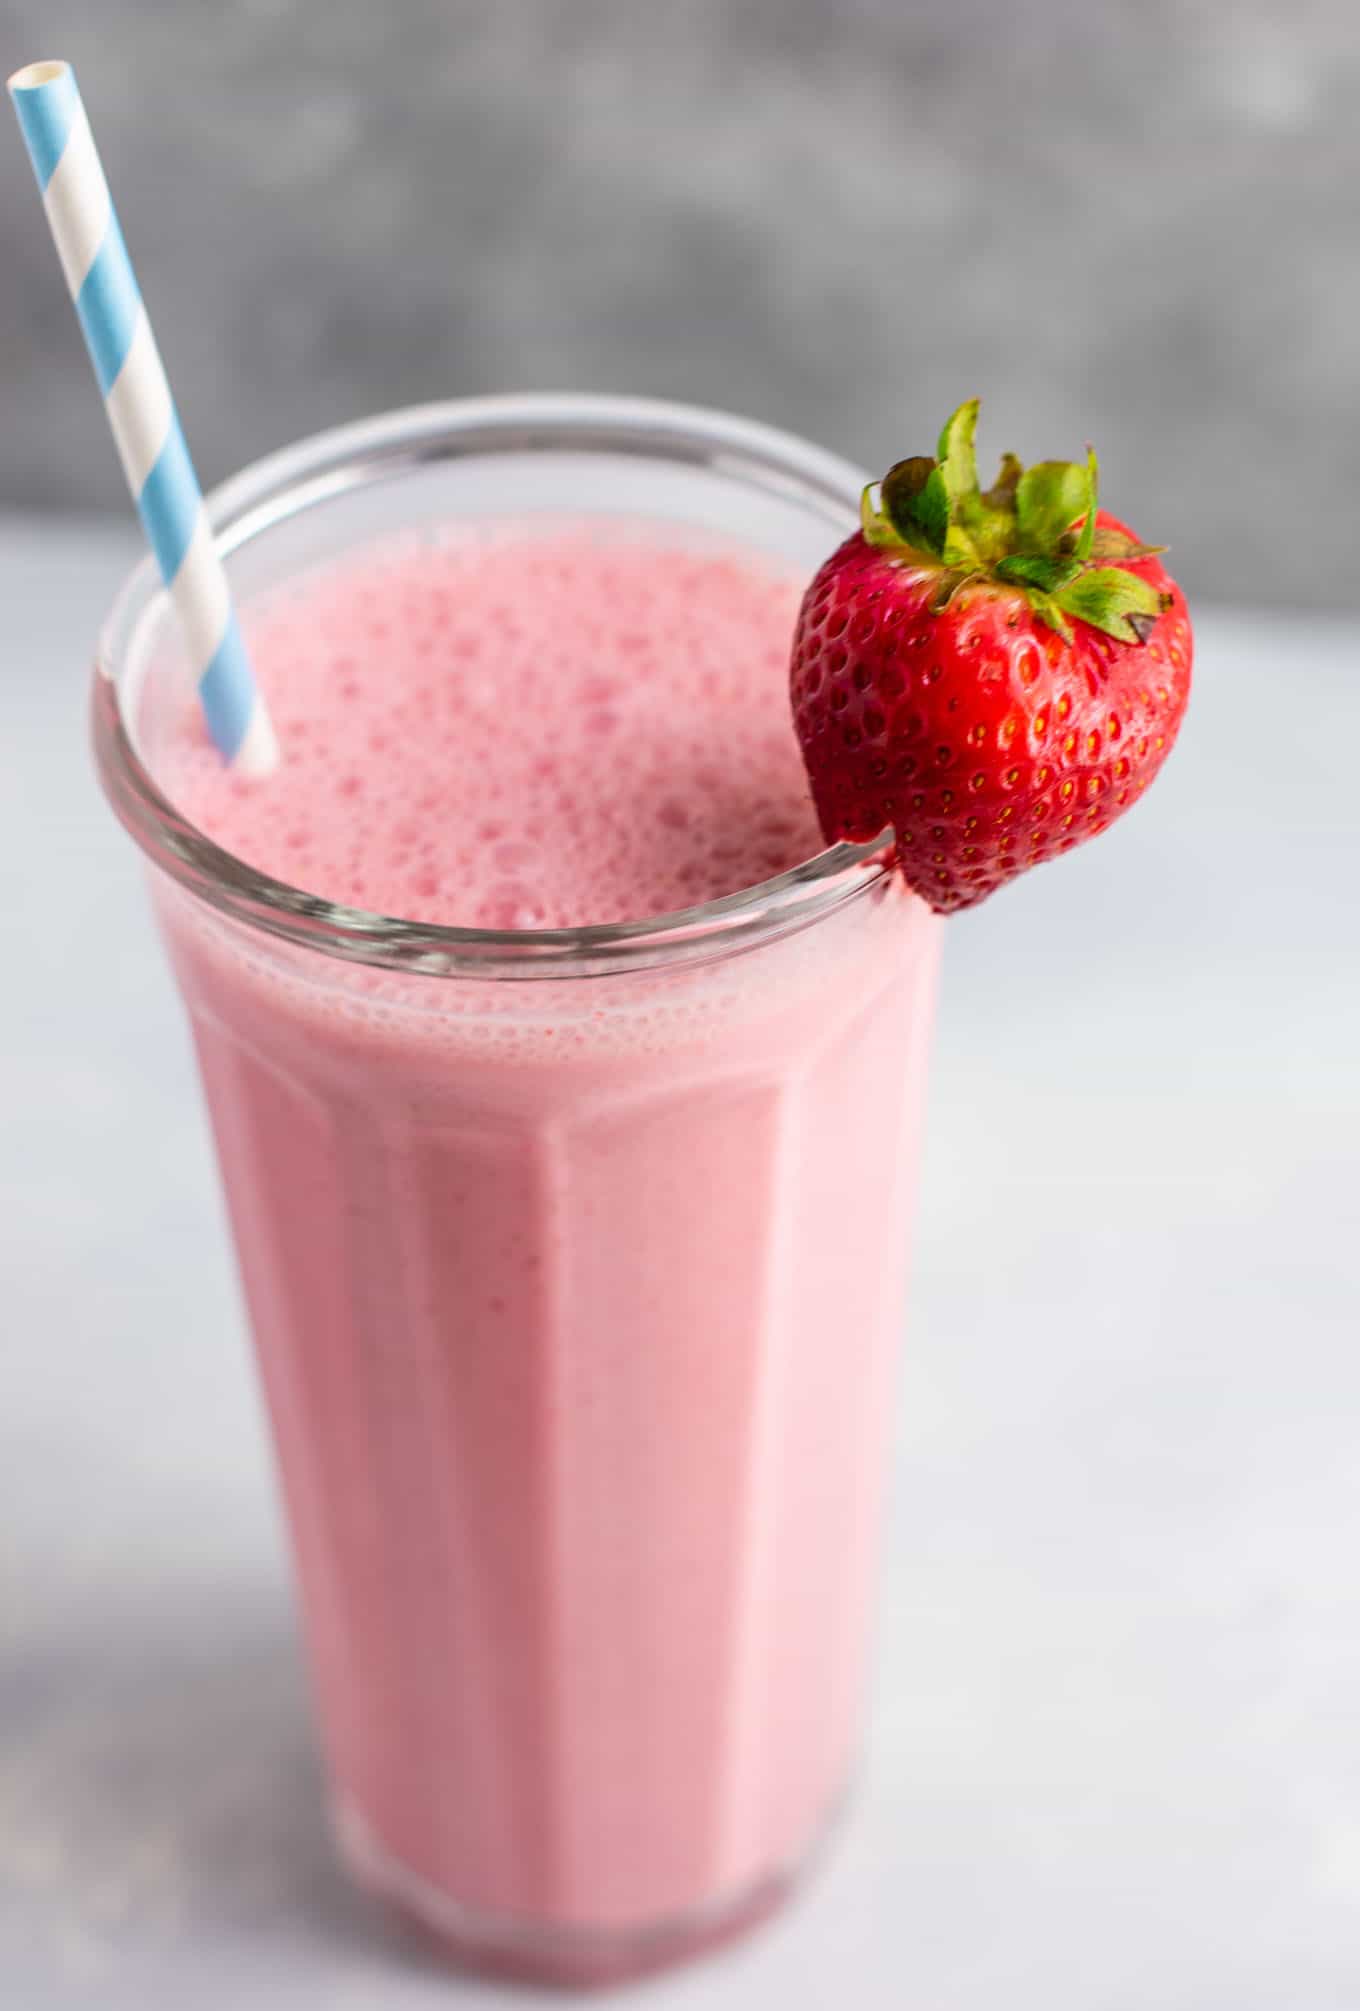 Good Strawberry Smoothie Recipes